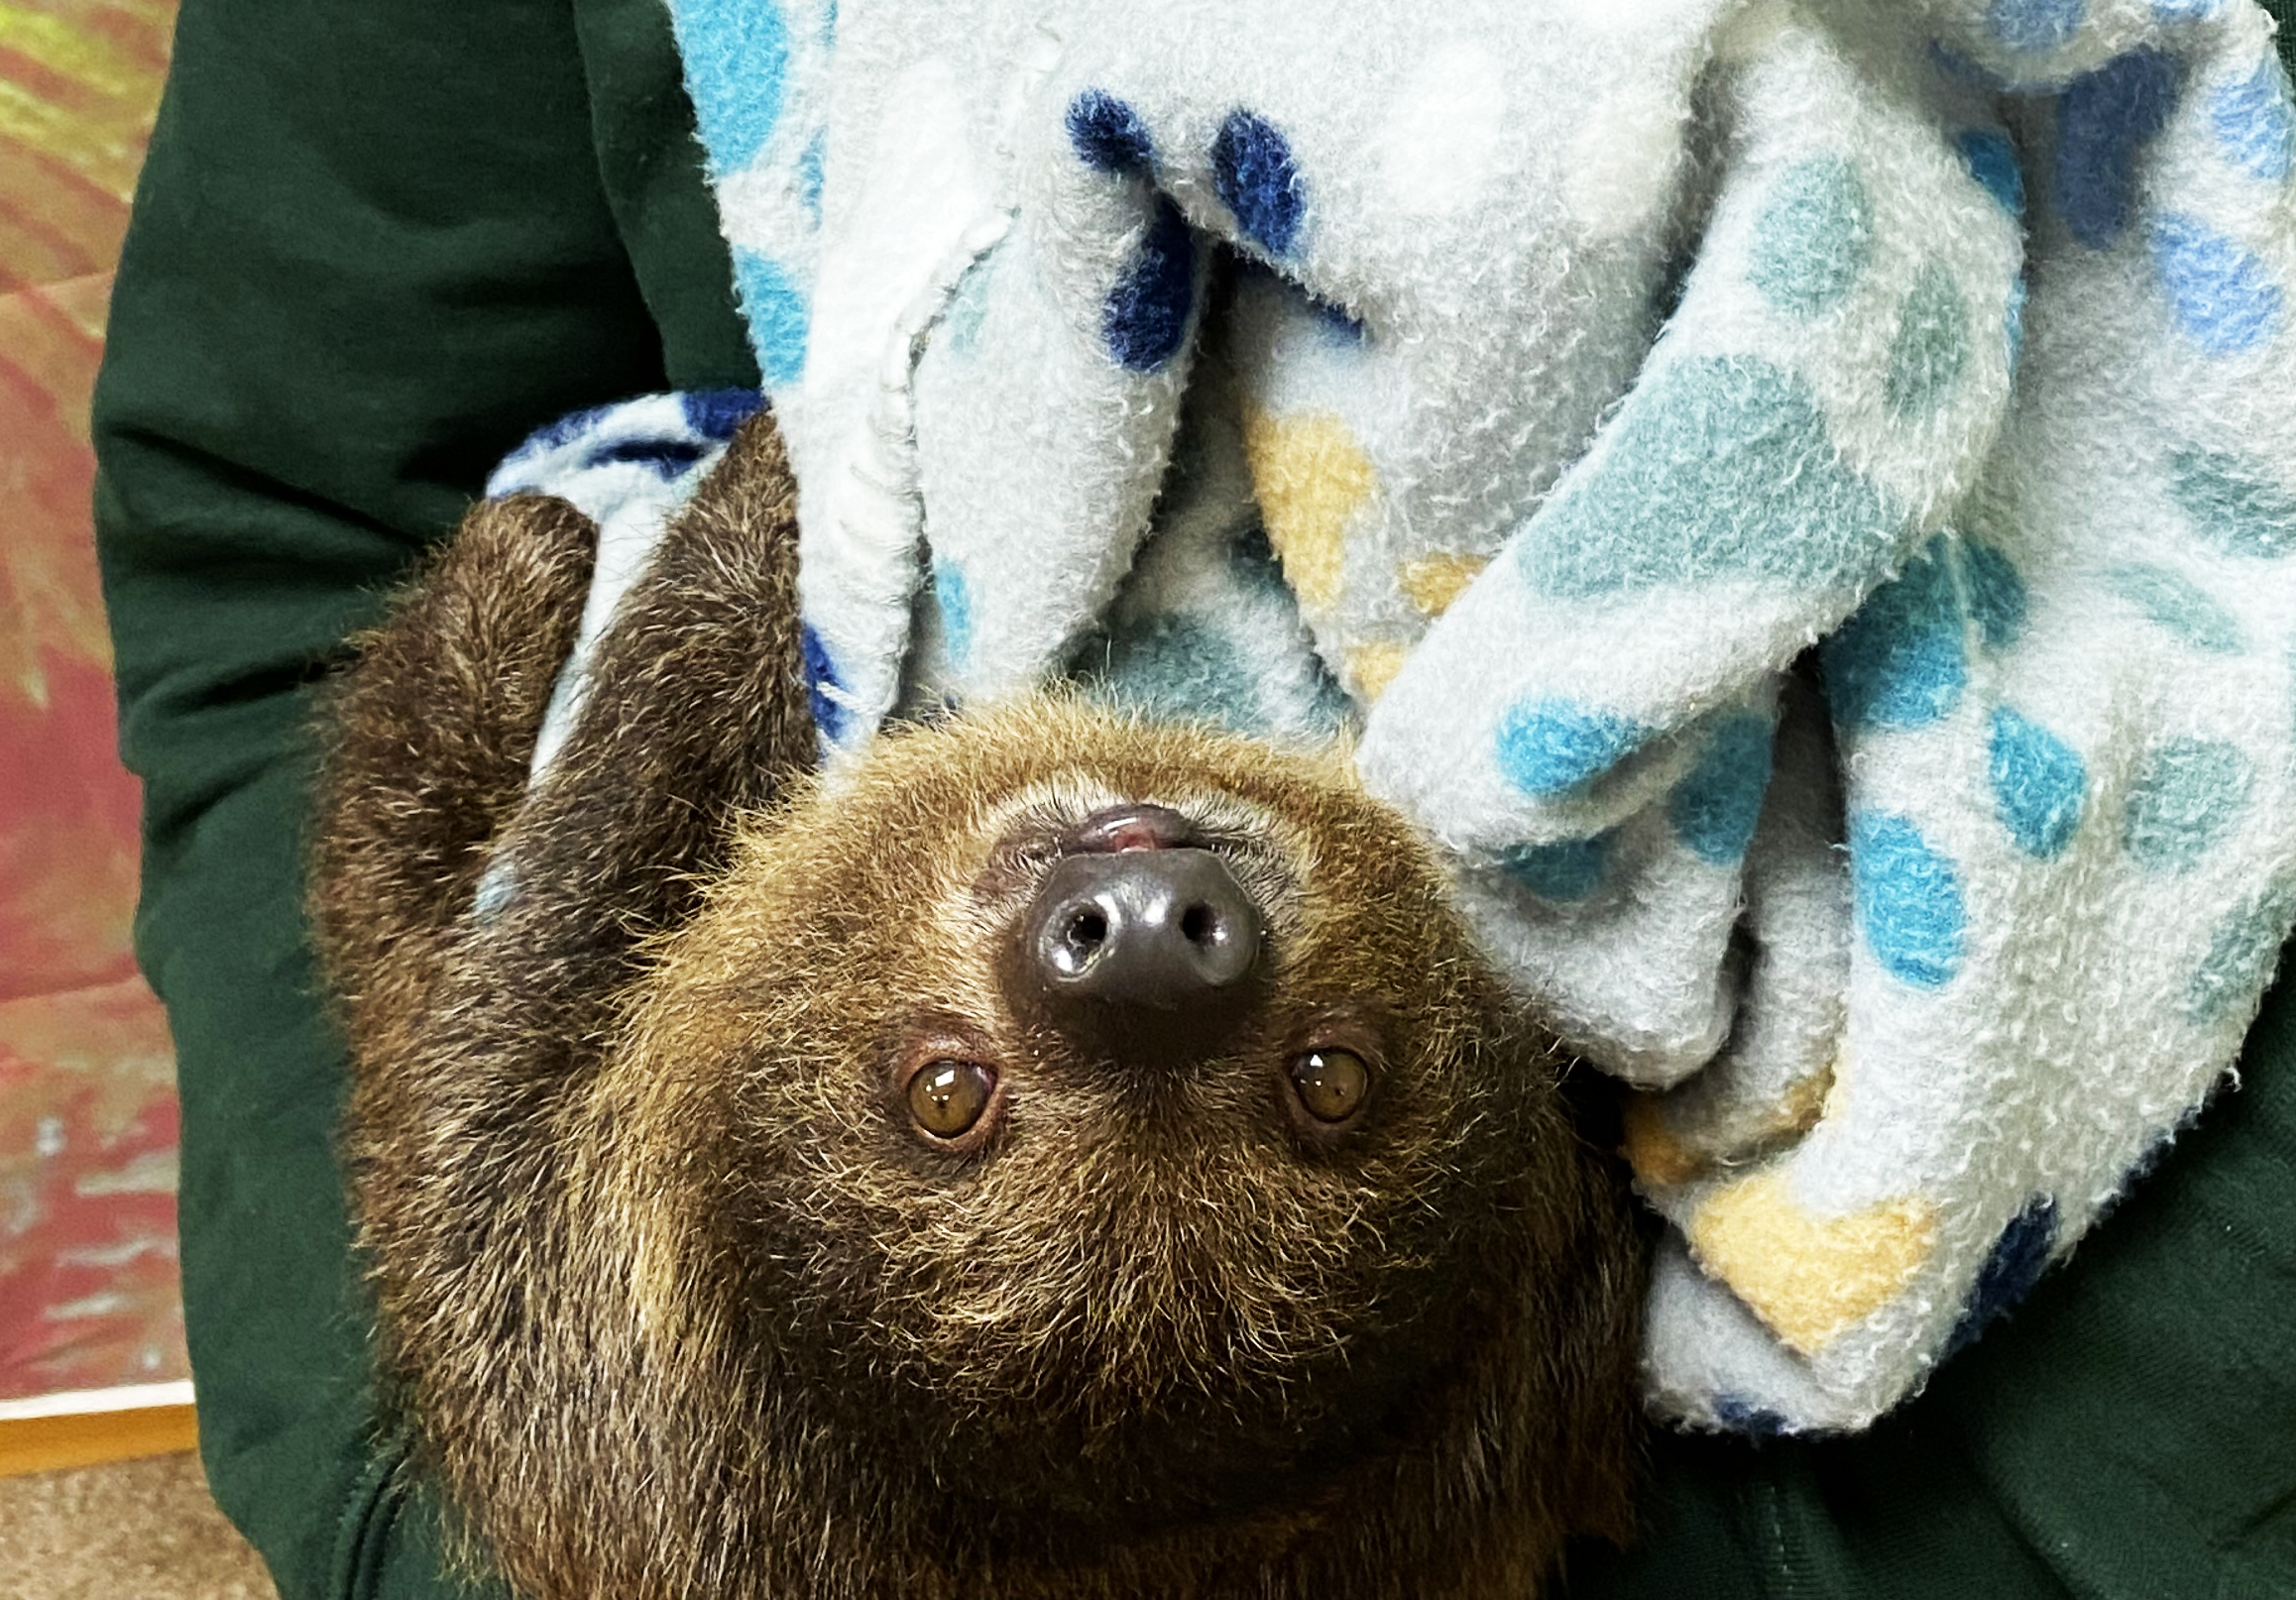 Juvenile Sloth Encounter photo